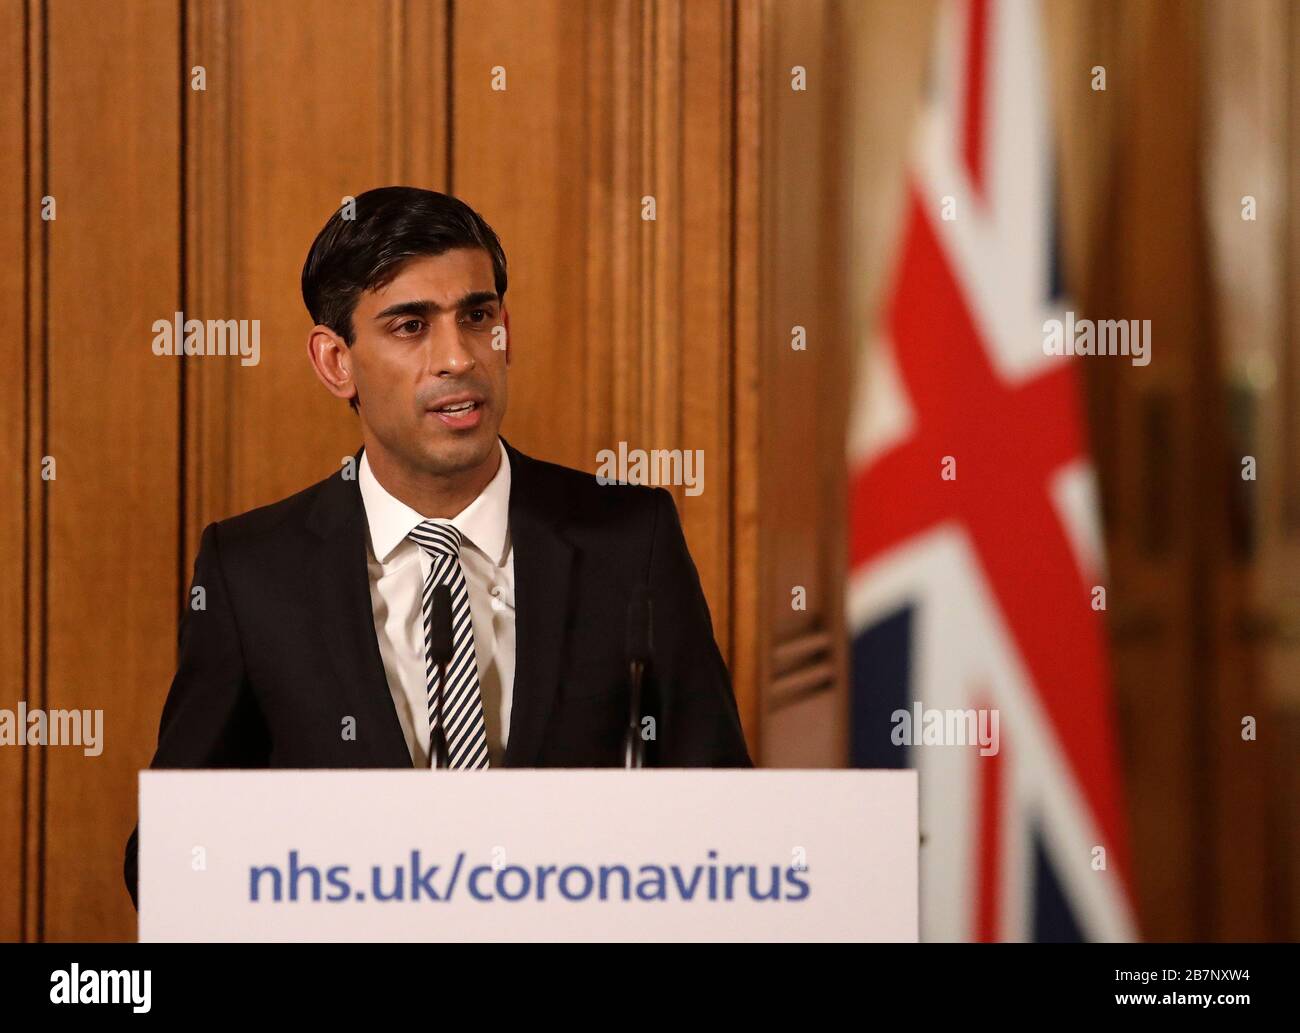 Le chancelier Rishi Sunak a parlé à un exposé des médias à Downing Street, Londres, sur Coronavirus (COVID-19). Date de l'image: Mardi 17 mars 2020. Voir l'histoire de PA SANTÉ Coronavirus. Crédit photo devrait lire: Matt Dunham/PA fil Banque D'Images